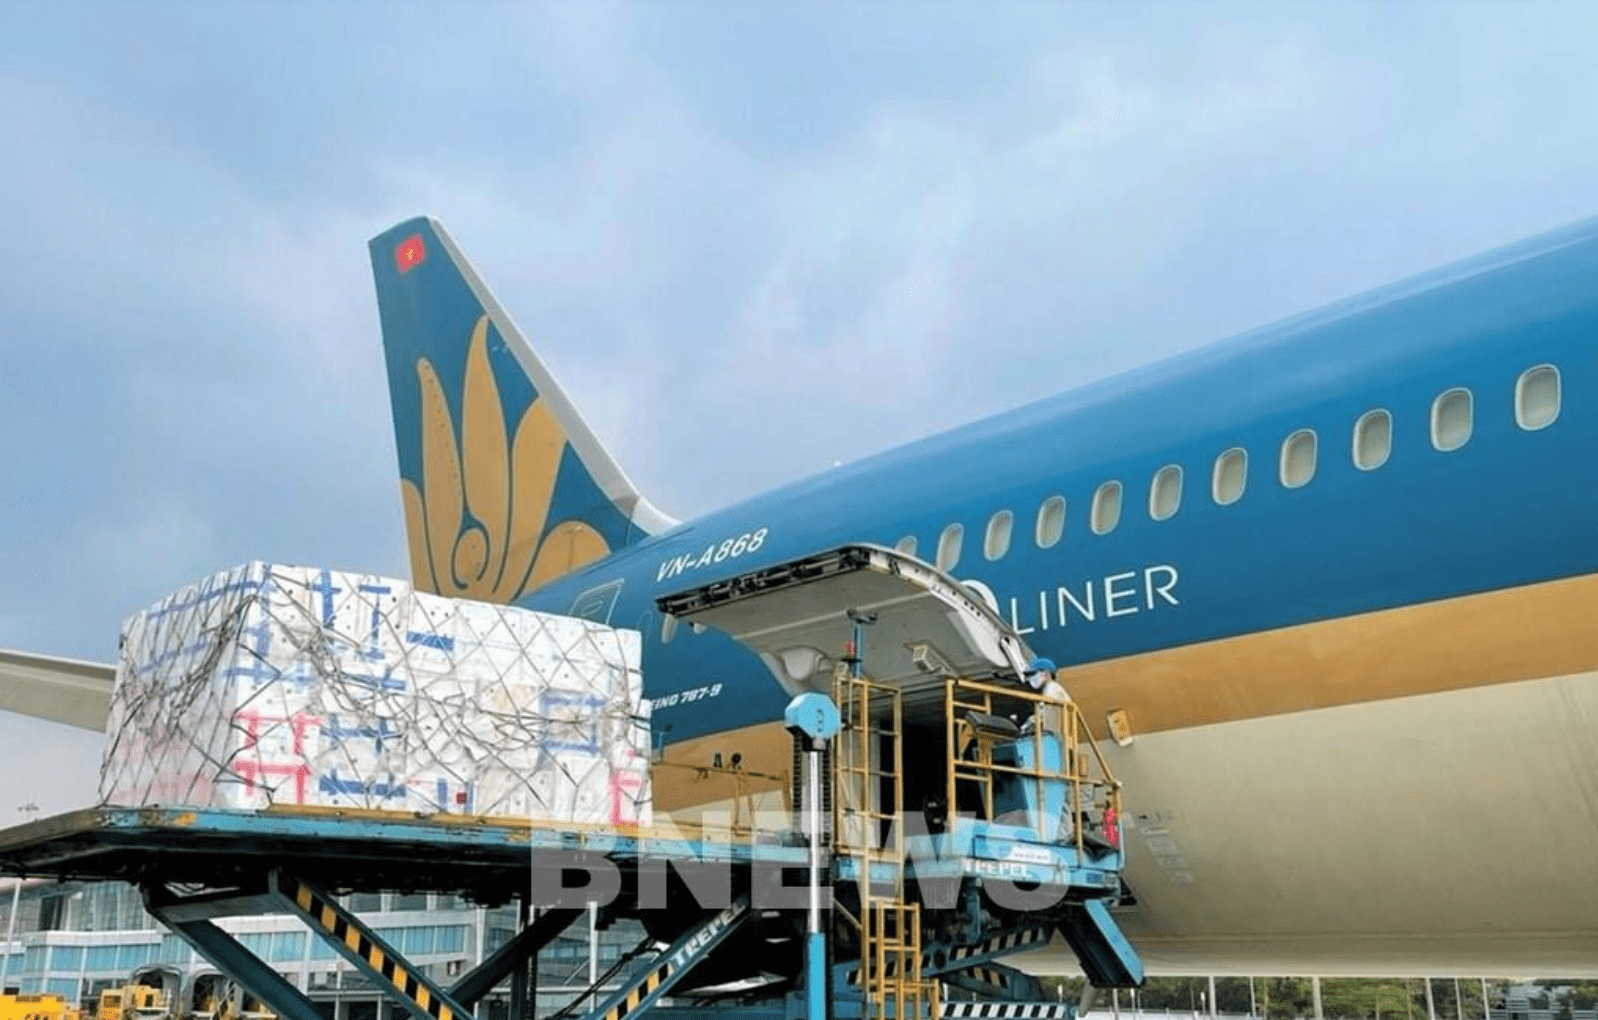 Hệ thống logistics của Vietnam Airlines ngày càng hiện đại. Ảnh: Diệp Anh